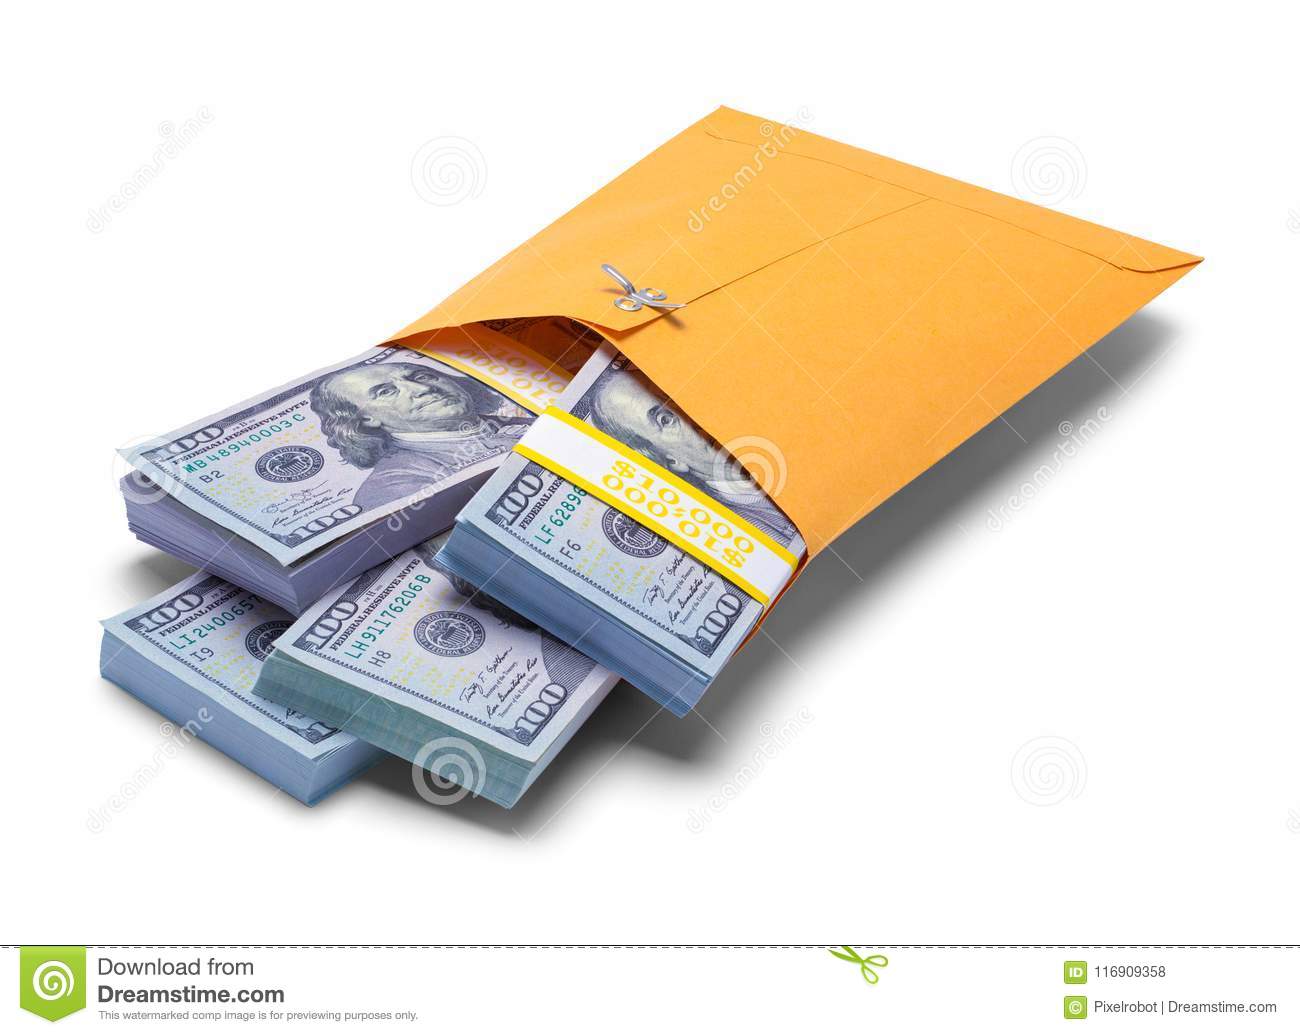 Money in brown envelope.jpg